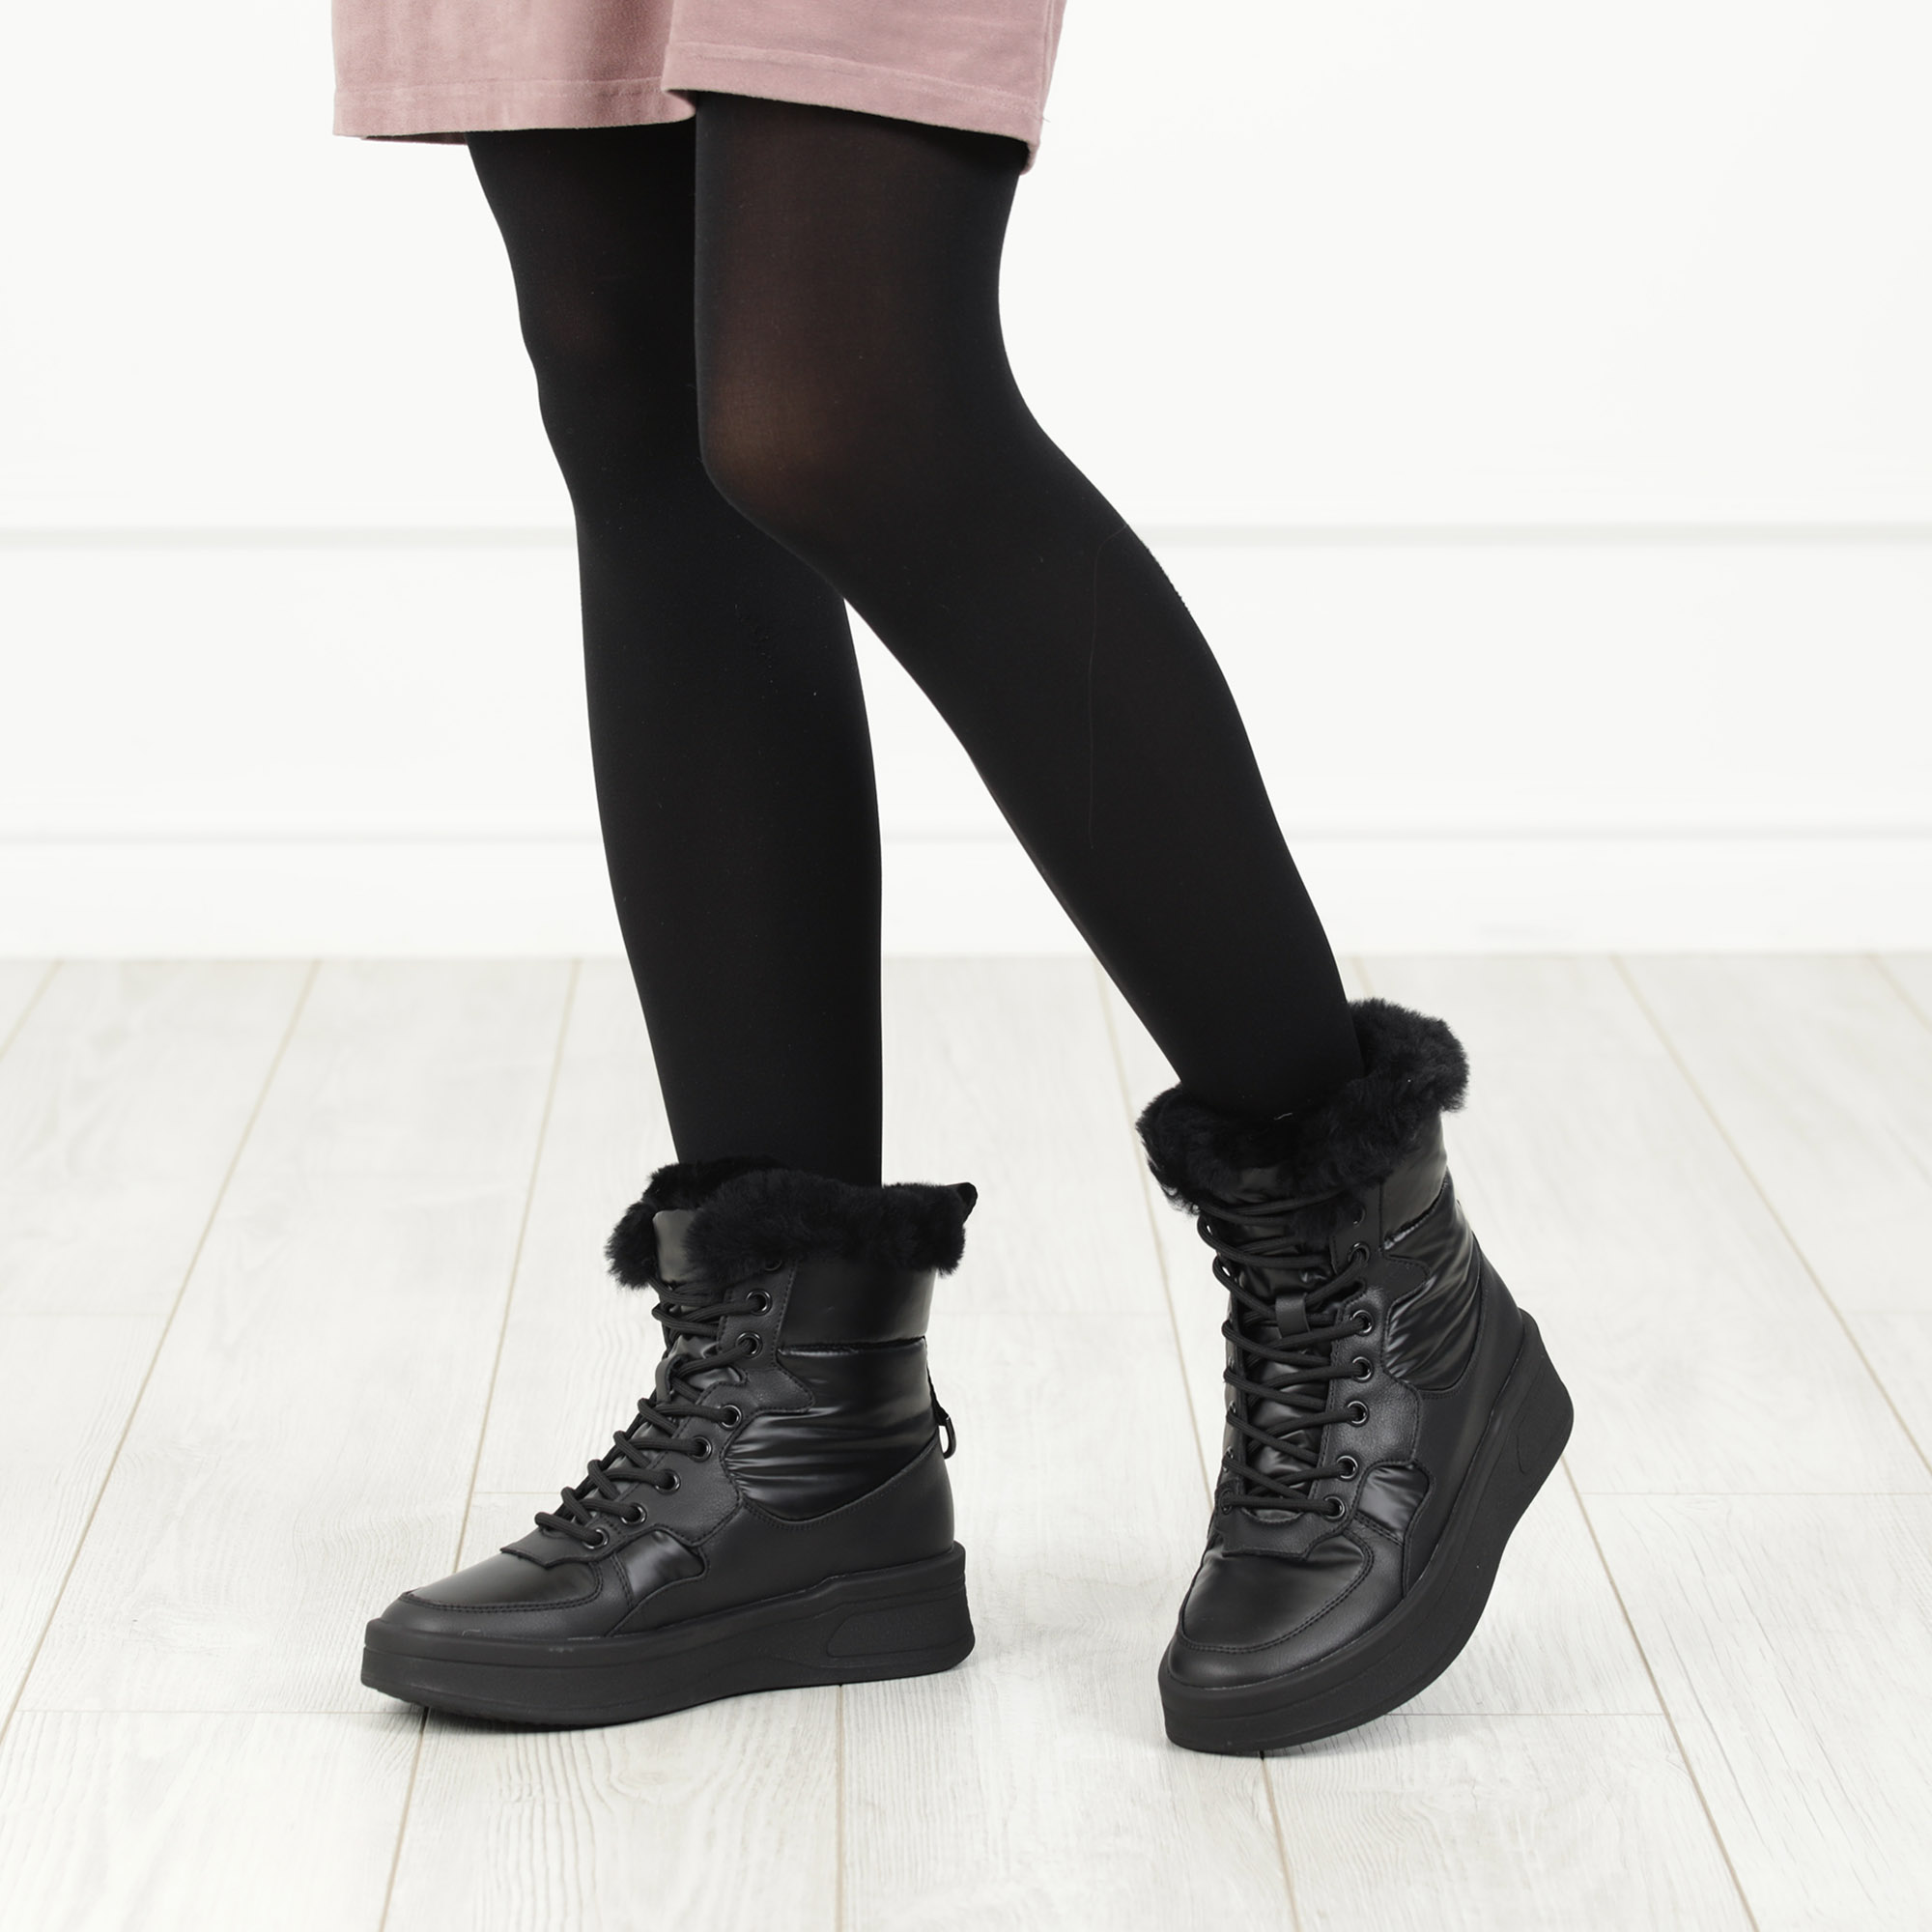 Черные высокие кроссовки из комбинированных материалов смеховой опушкой на подкладке из натуральной шерсти на утолщенной платформе Respect, размер 37, цвет черный - фото 2